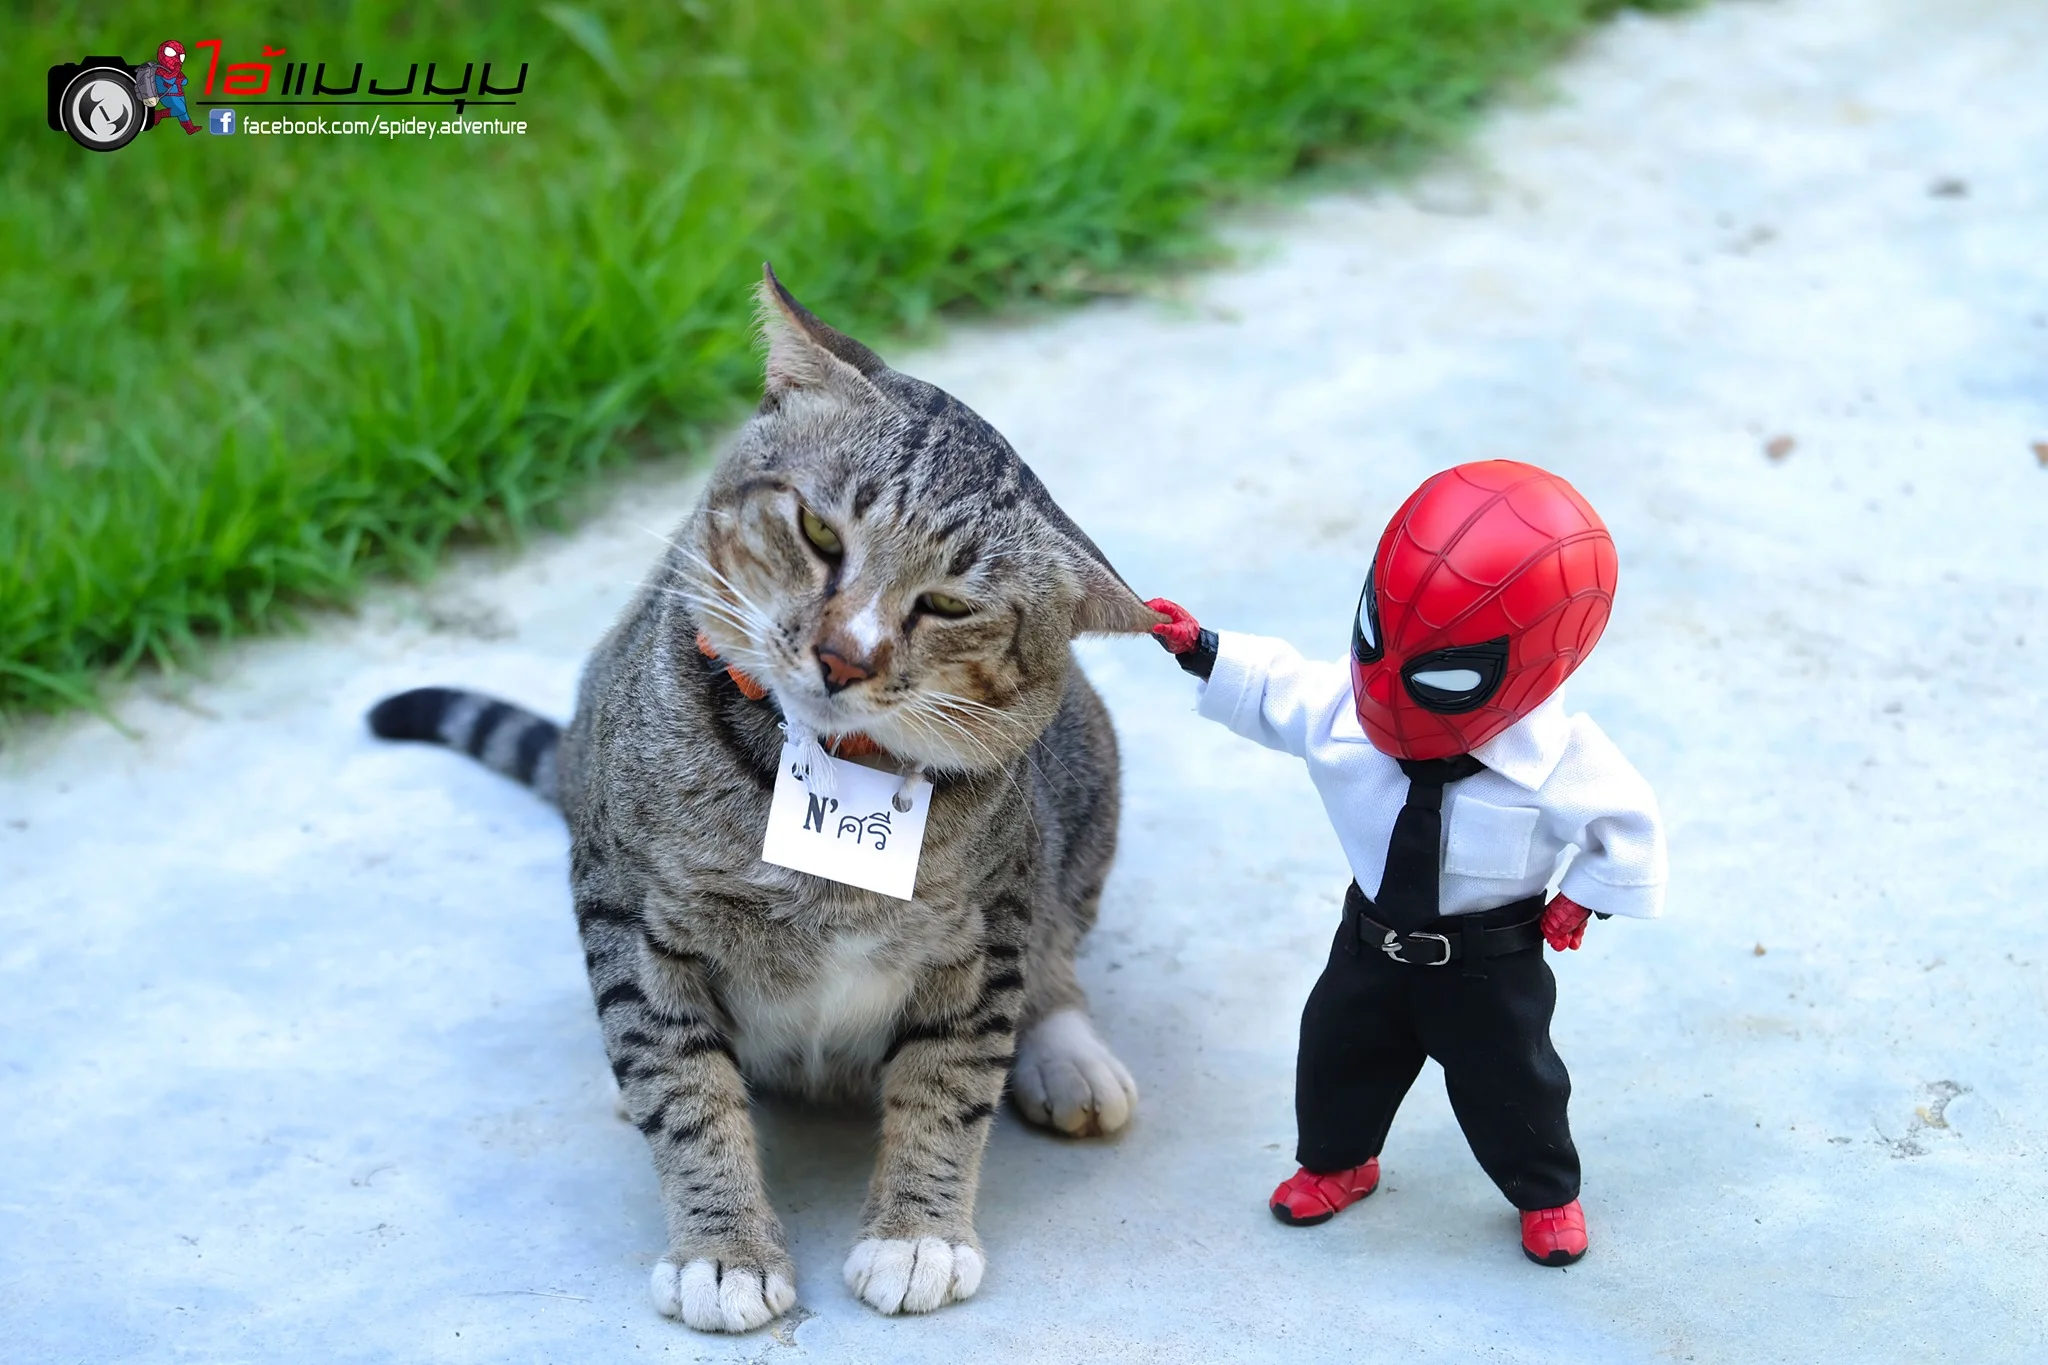 Художник додав до фото з котиками зображення Людини-павука – це виглядає дуже смішно - фото 459369